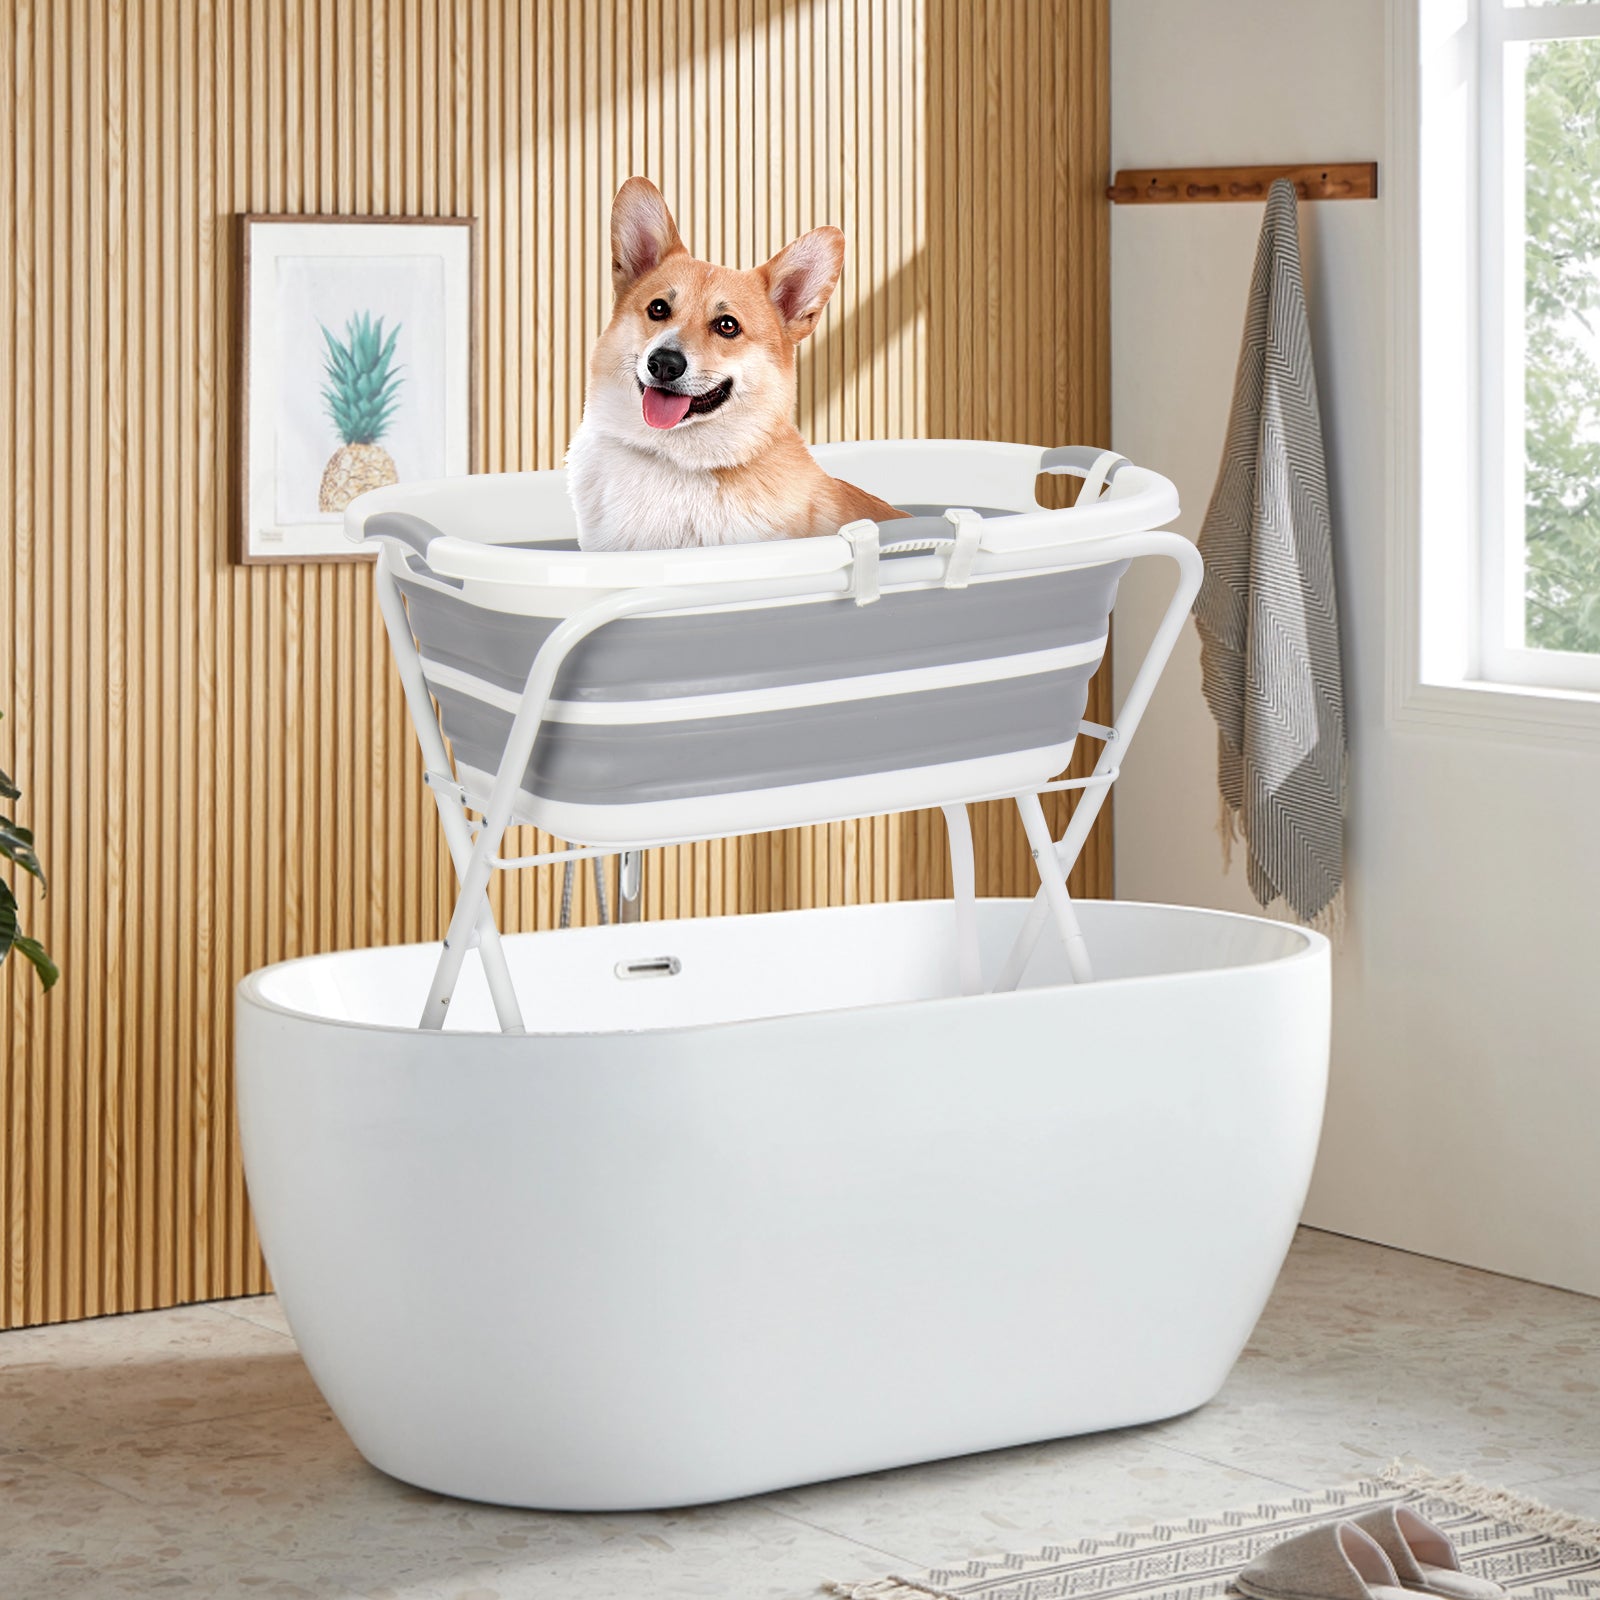 B1 2 in 1 Pet Bath Tub